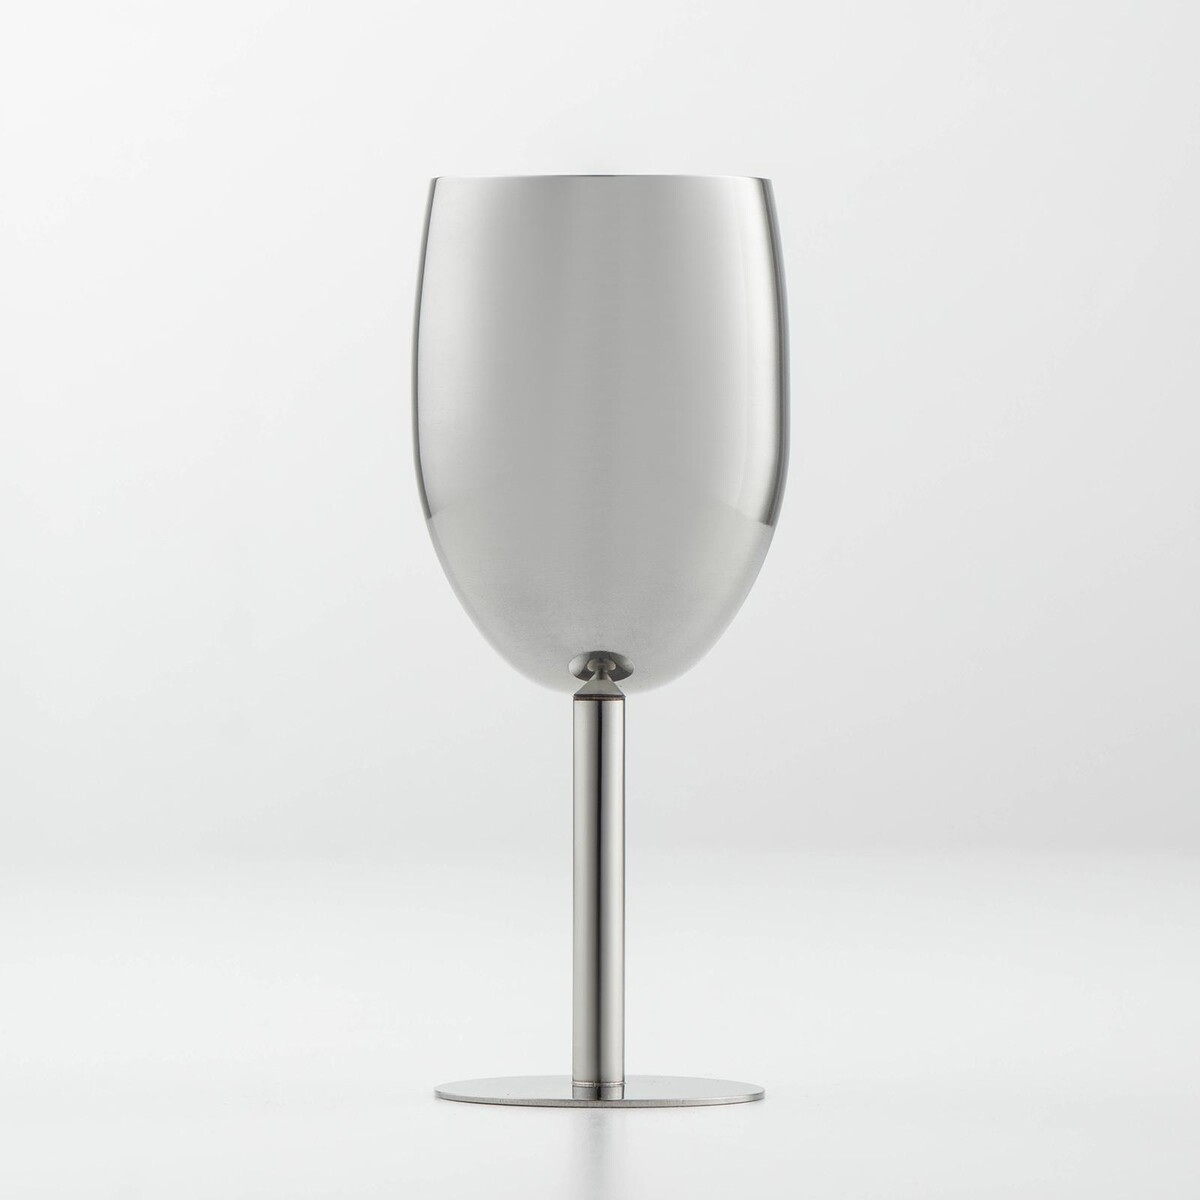 Бокал винный из нержавеющей стали для коктейлей, 17×7 см, цвет хромированный бокал для вина 235 мл стекло 6 шт pasabahce casablanca 51258b